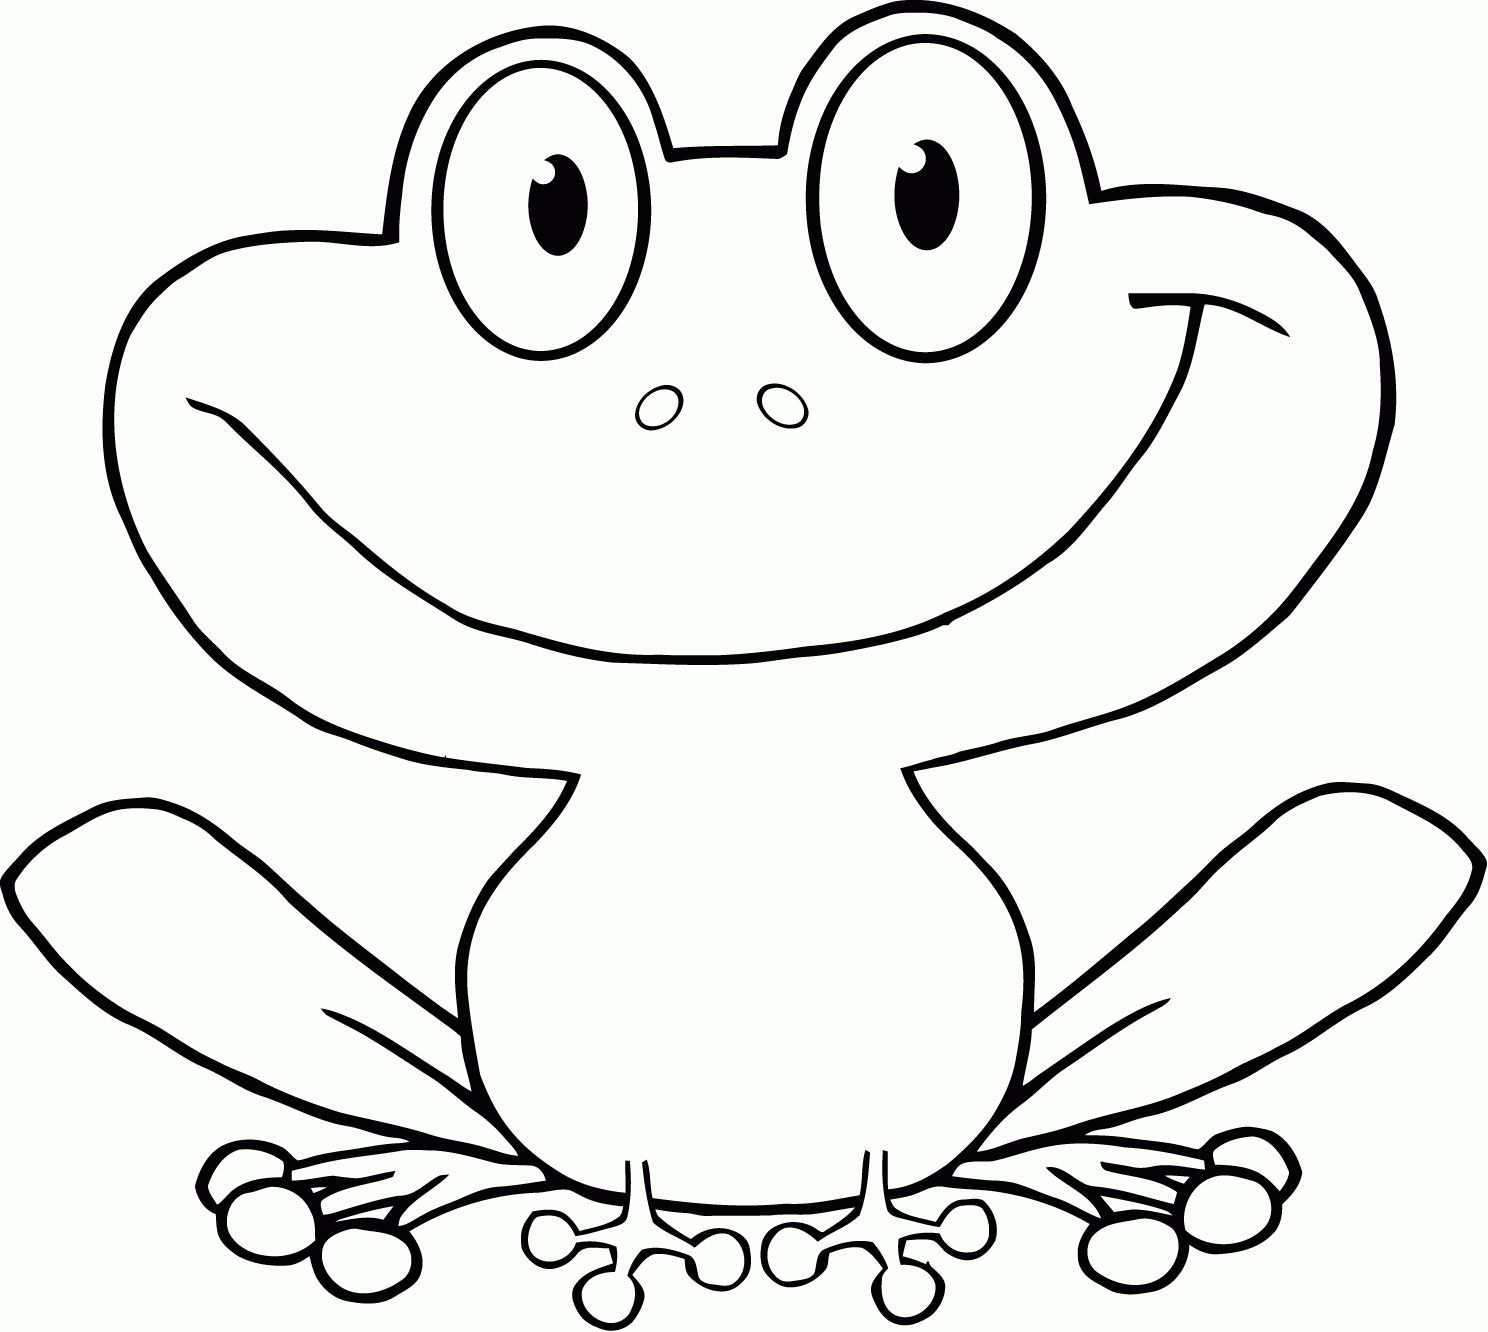 8 Beste Ausmalbilder Frosch Vorlage Kostenlos Drucken 1ausmalbilder Com Malvorlagen Tiere Ausmalbild Frosch Ausmalbilder